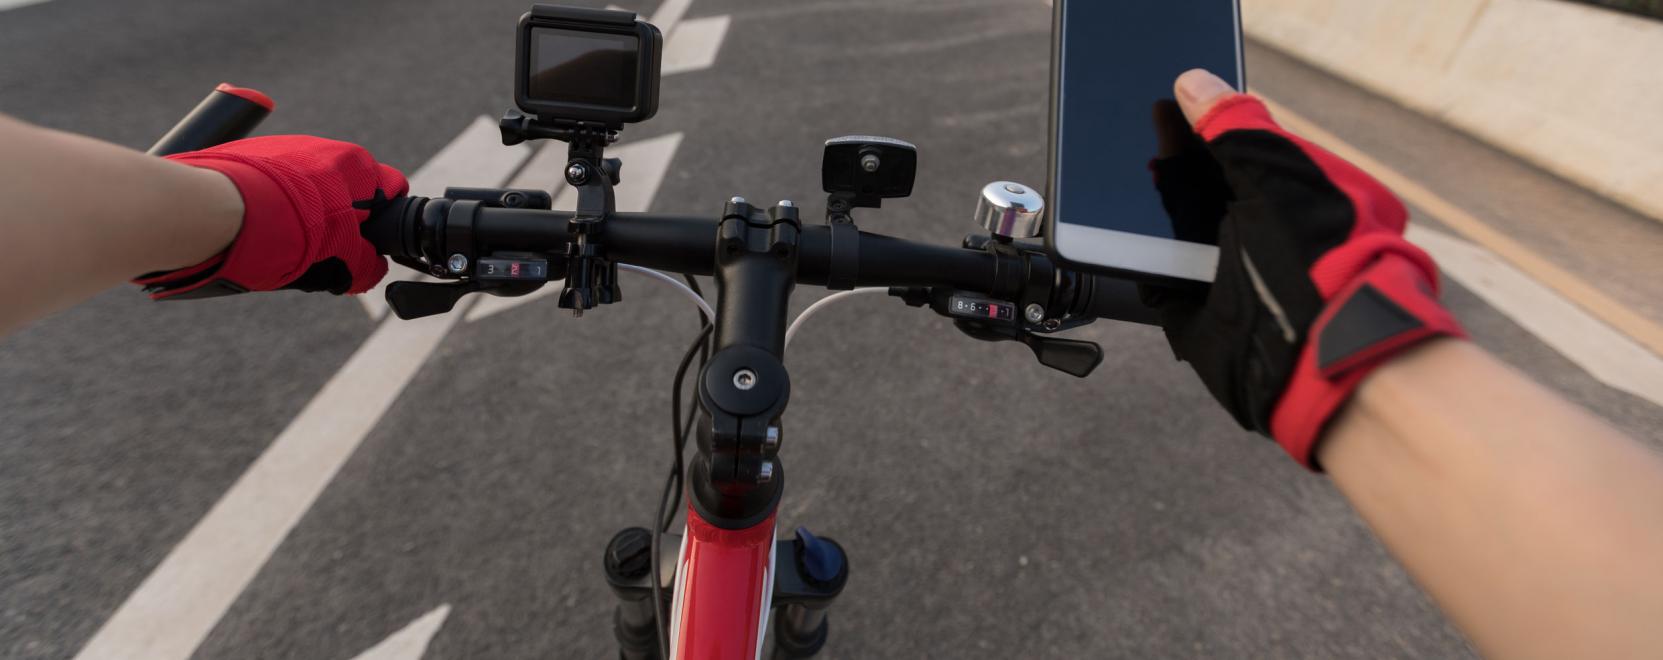 SIM-kártya védheti meg az e-bicikliket a lopástól